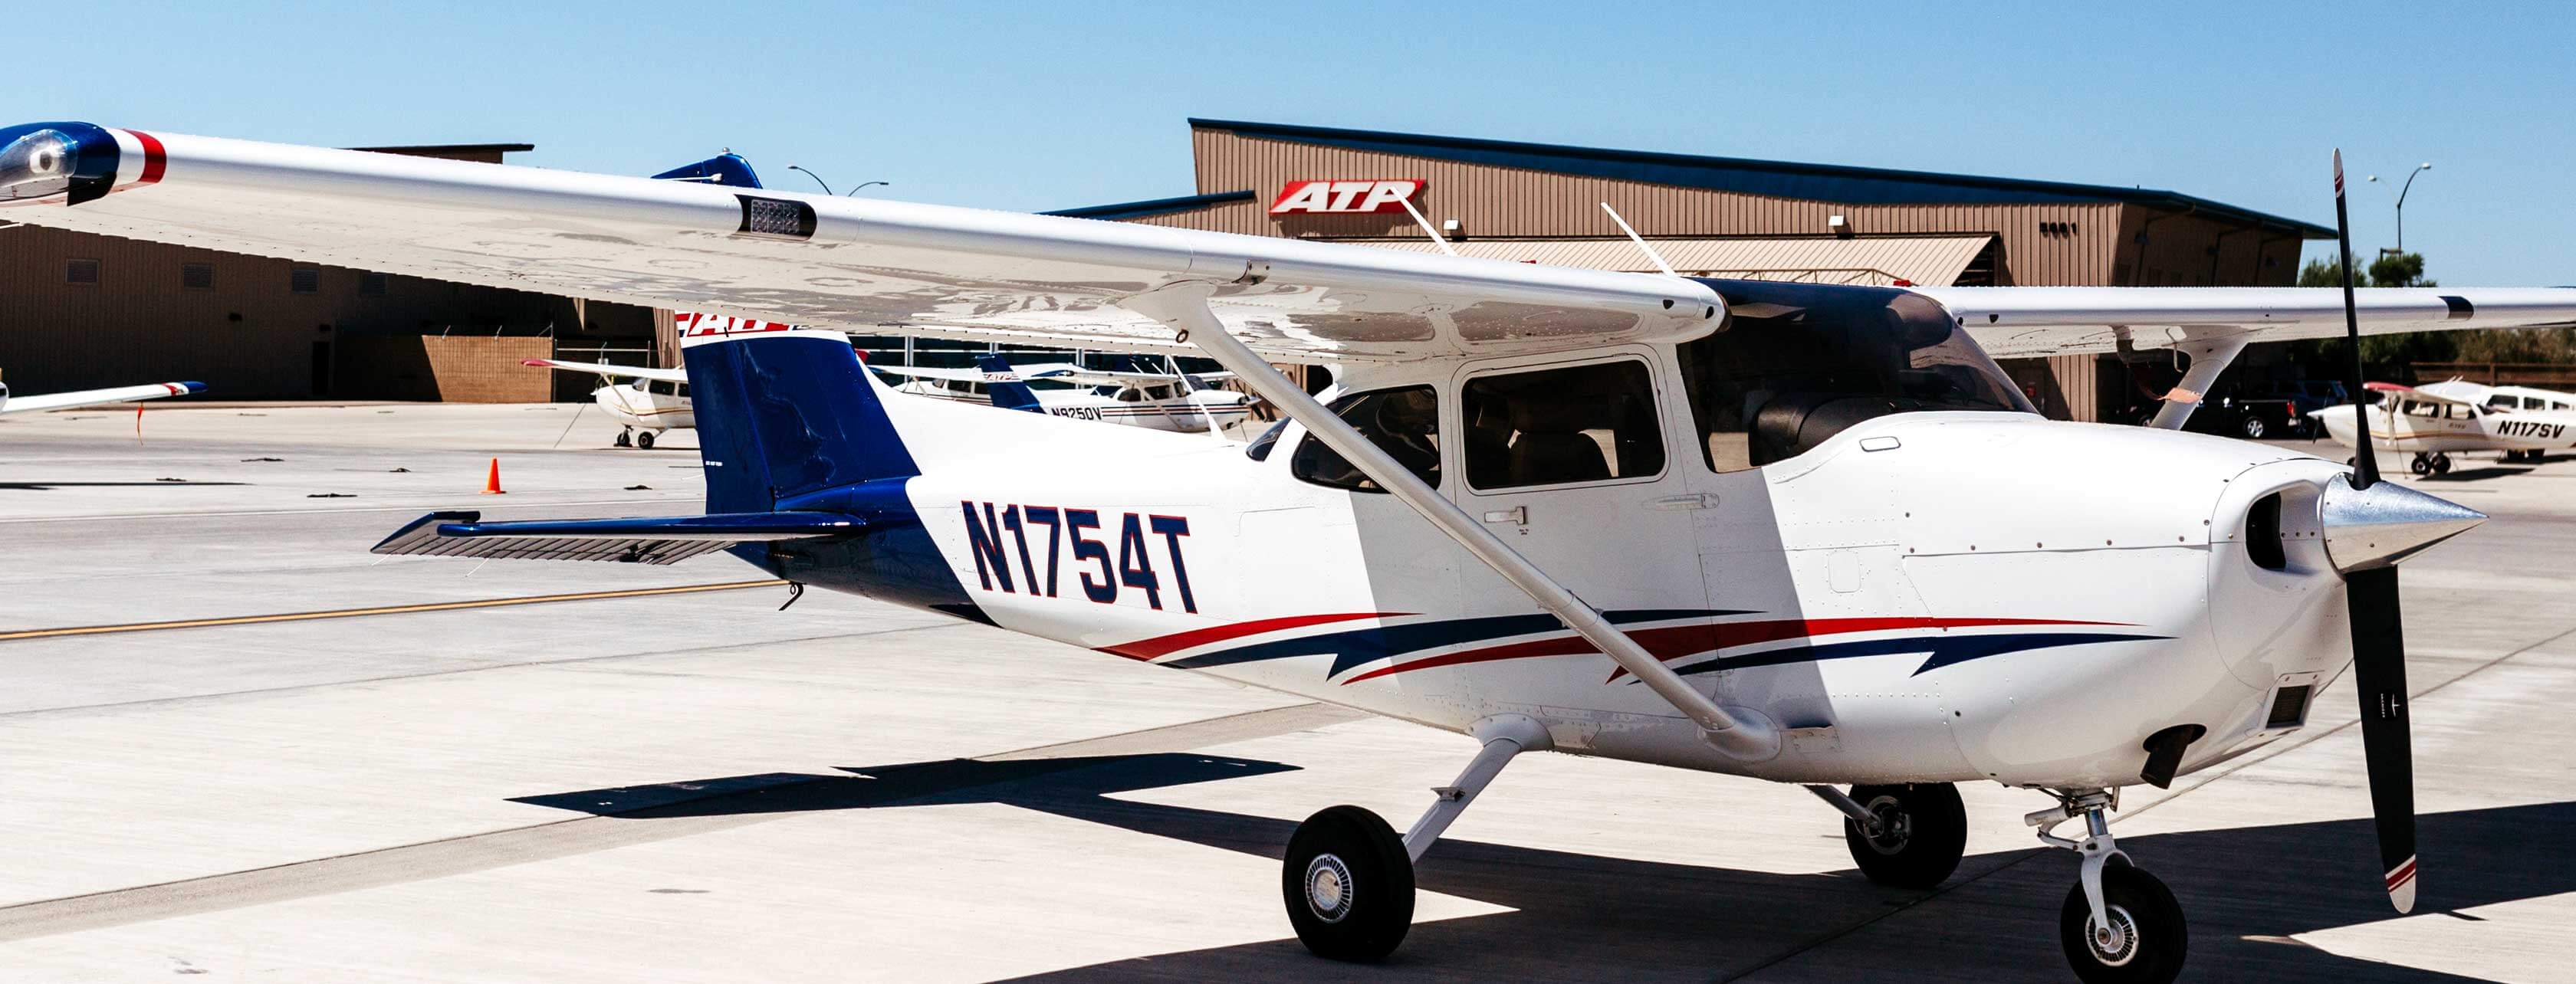 ATP Flight School - Tucson, Arizona Flight Training